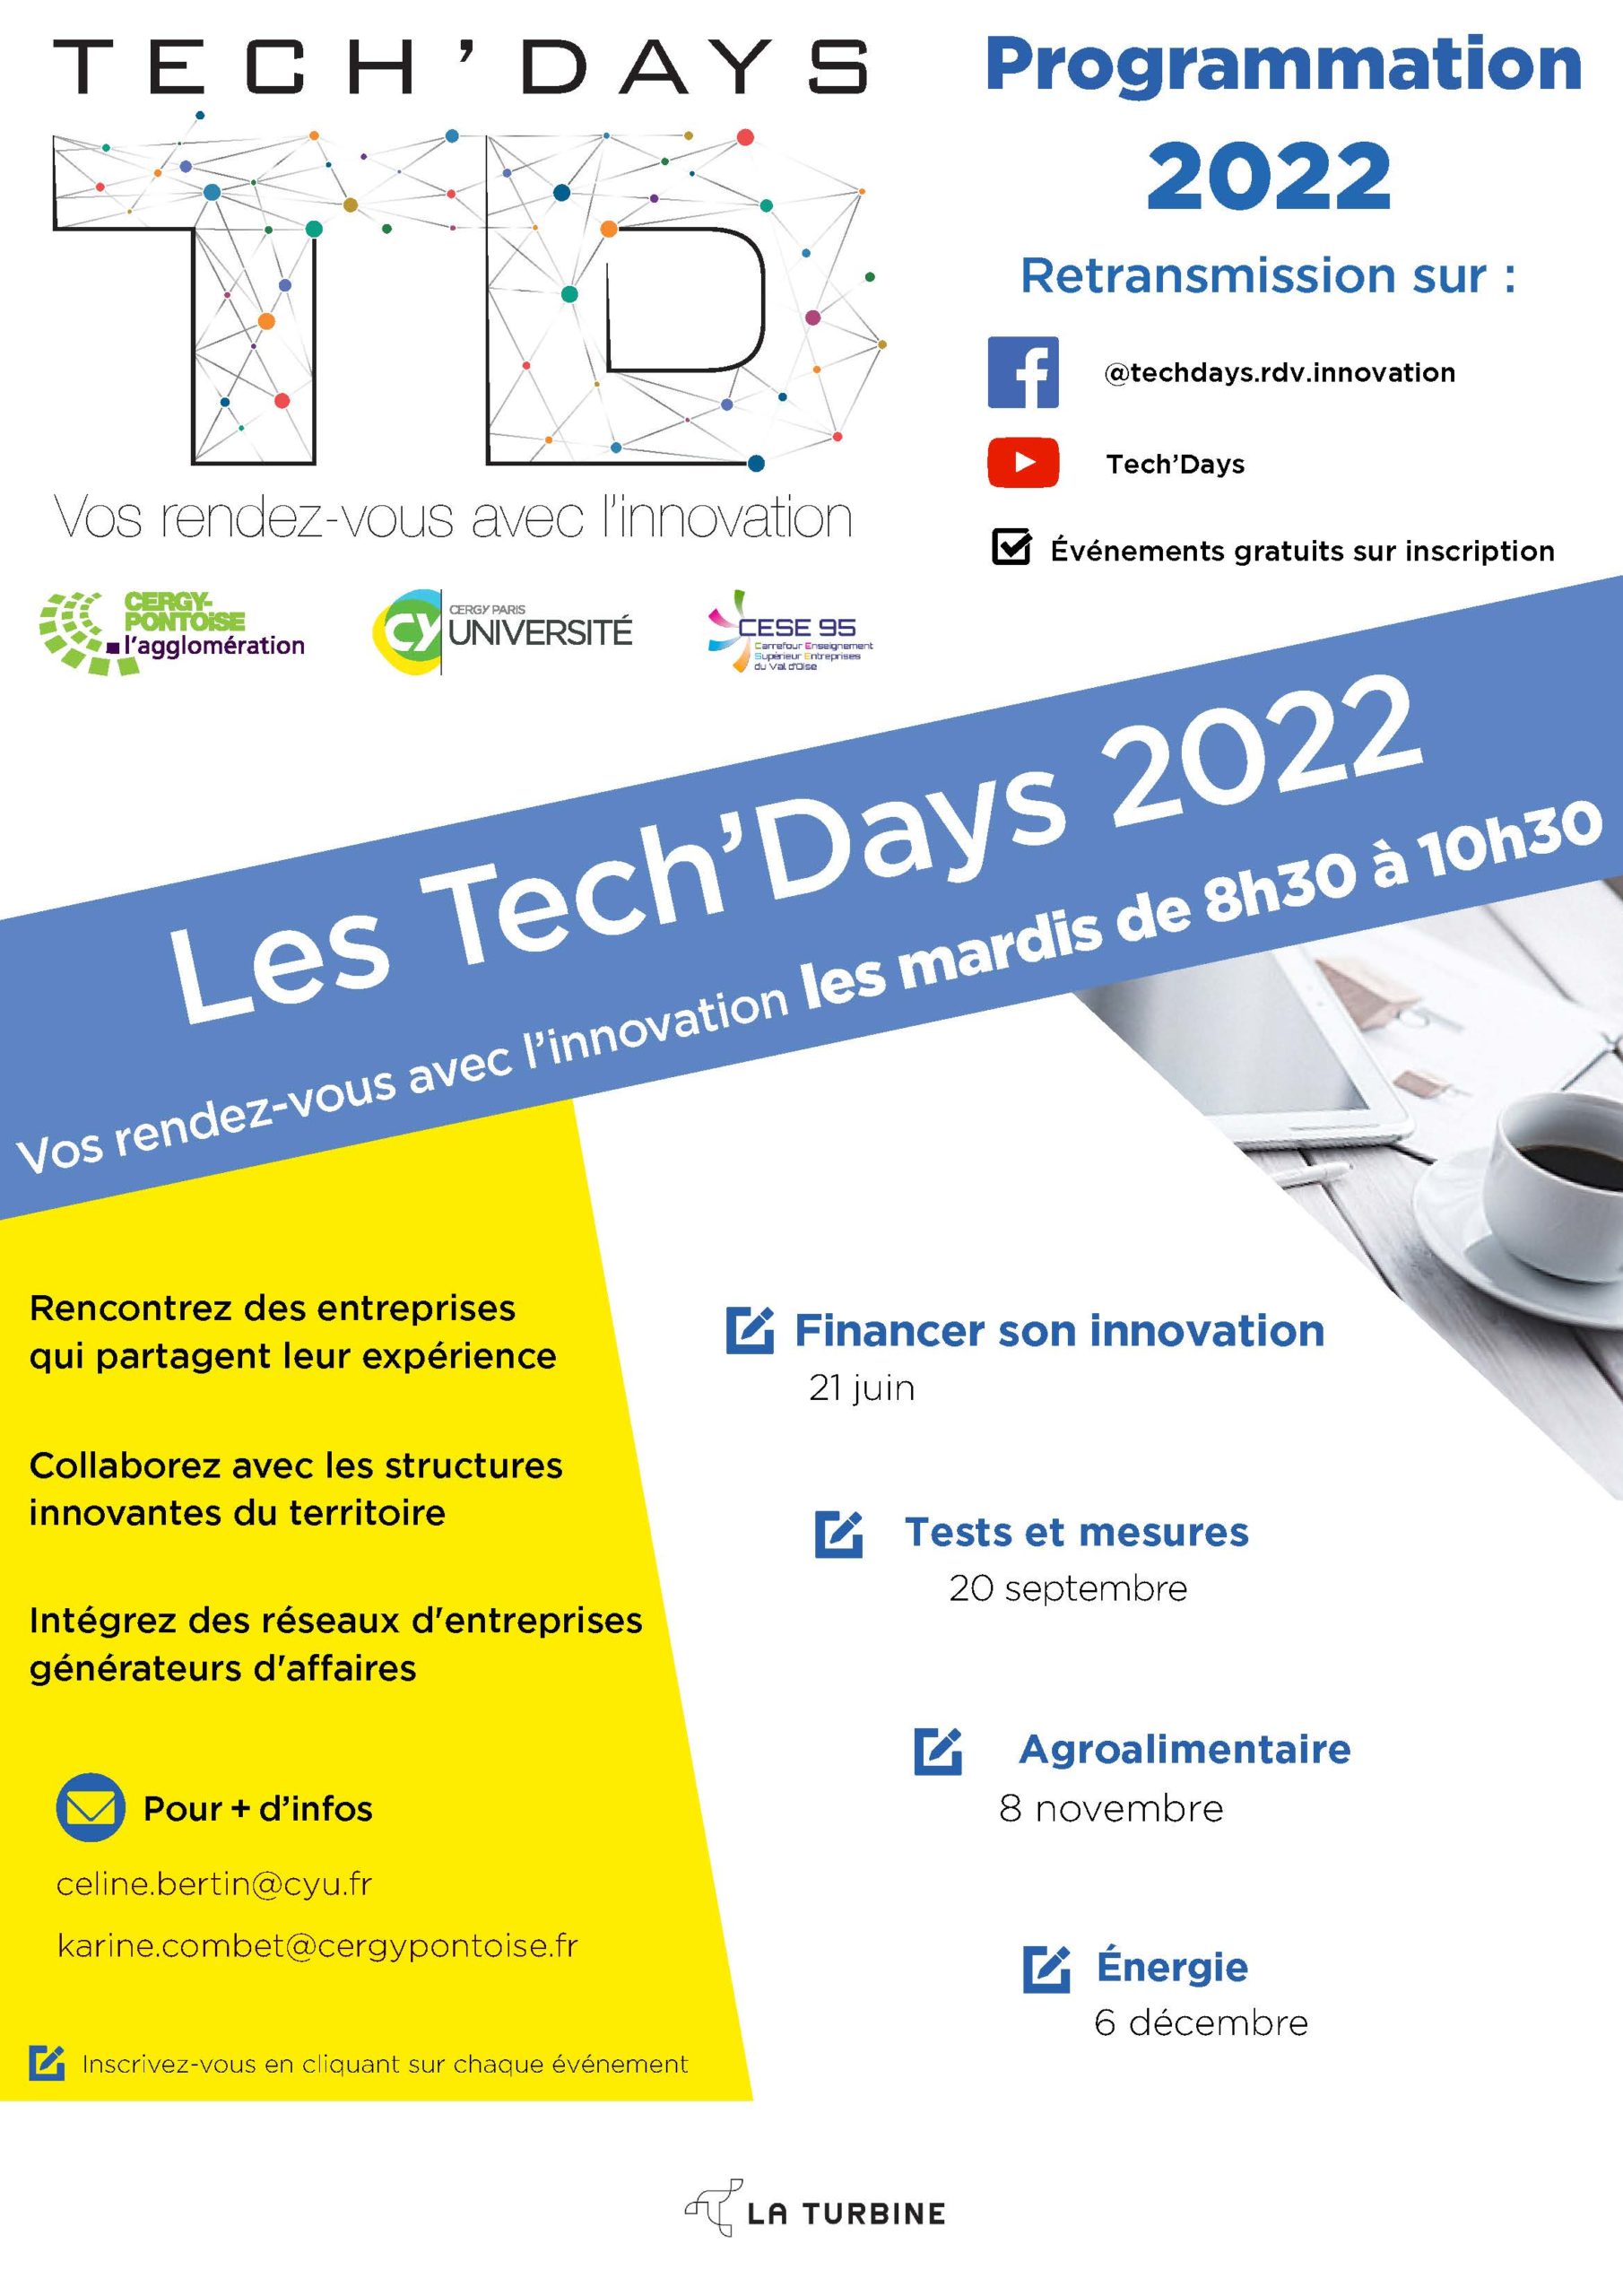 Tech'Days 2022